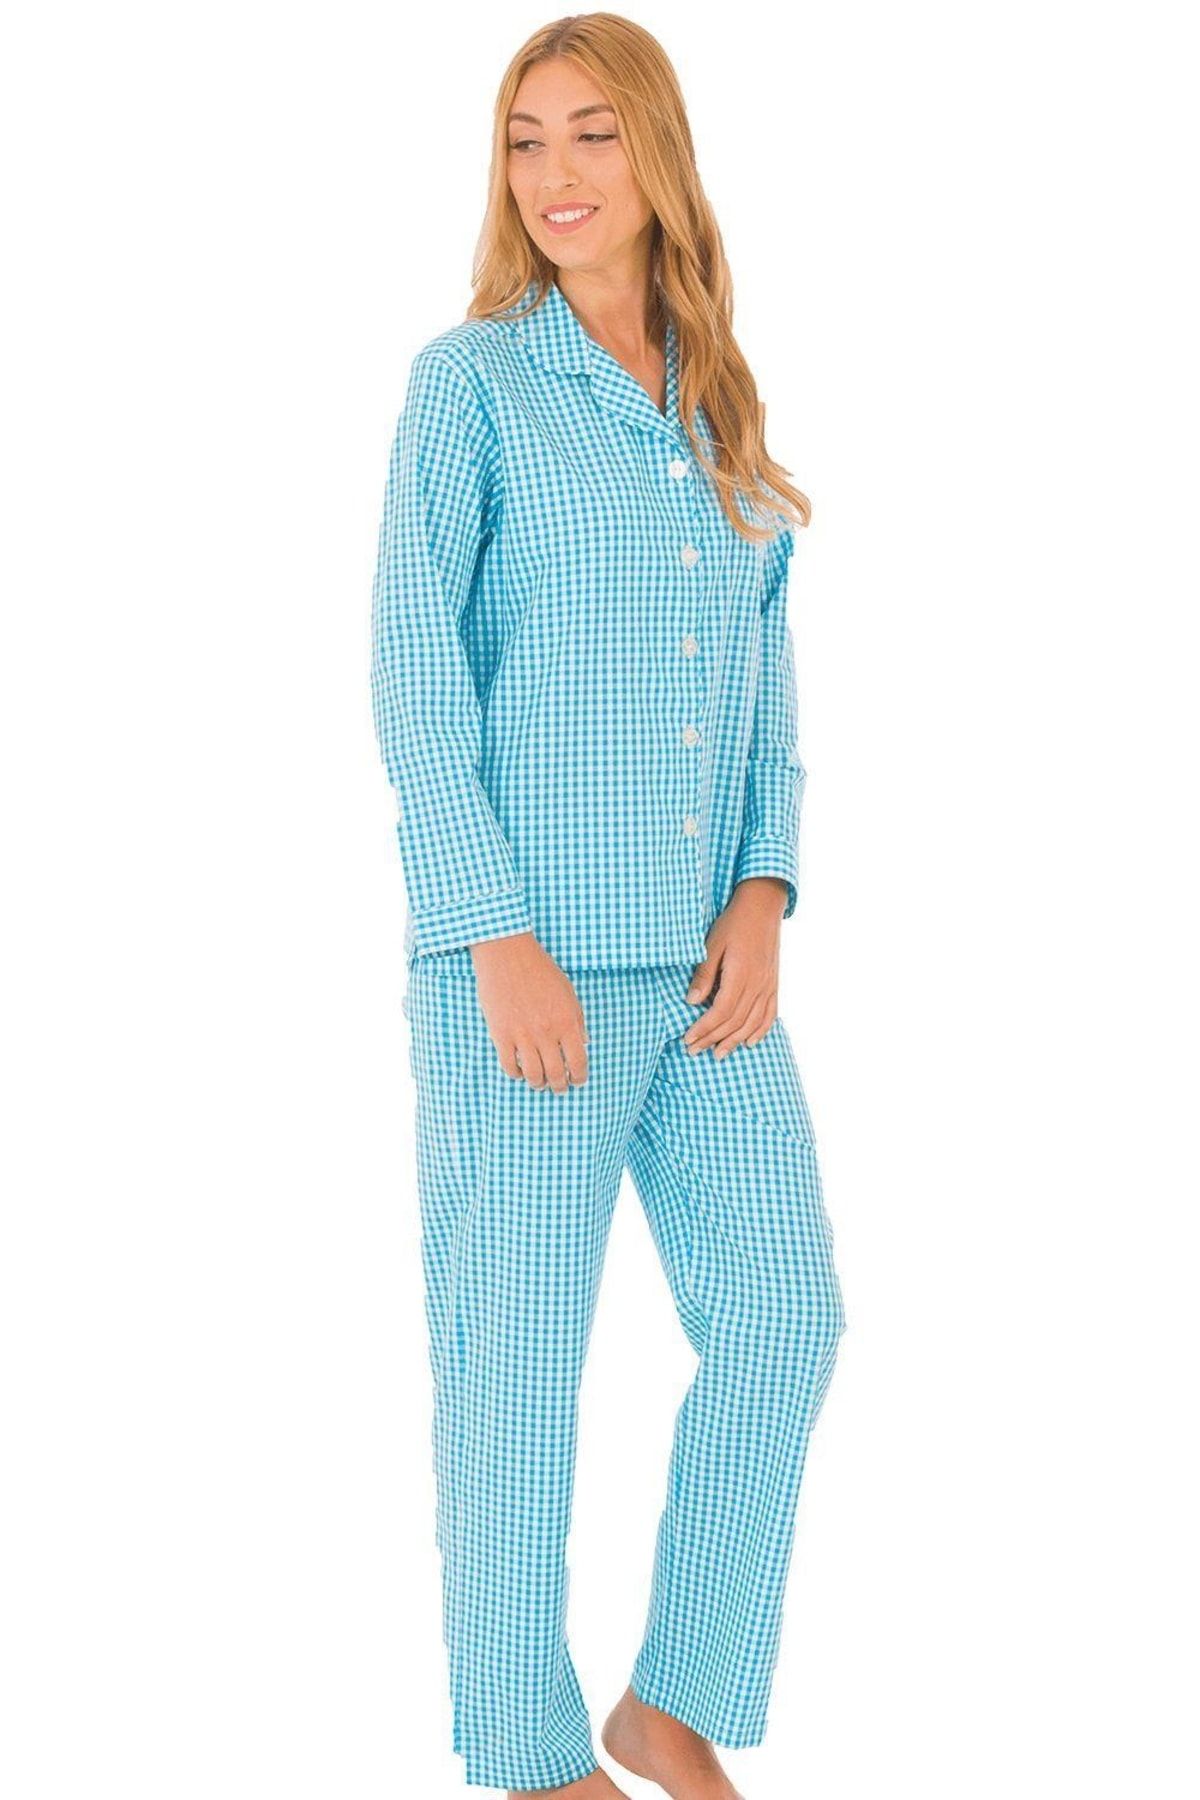 TheDon The Don Poplin Kadın Pijama Takımı Desen 12